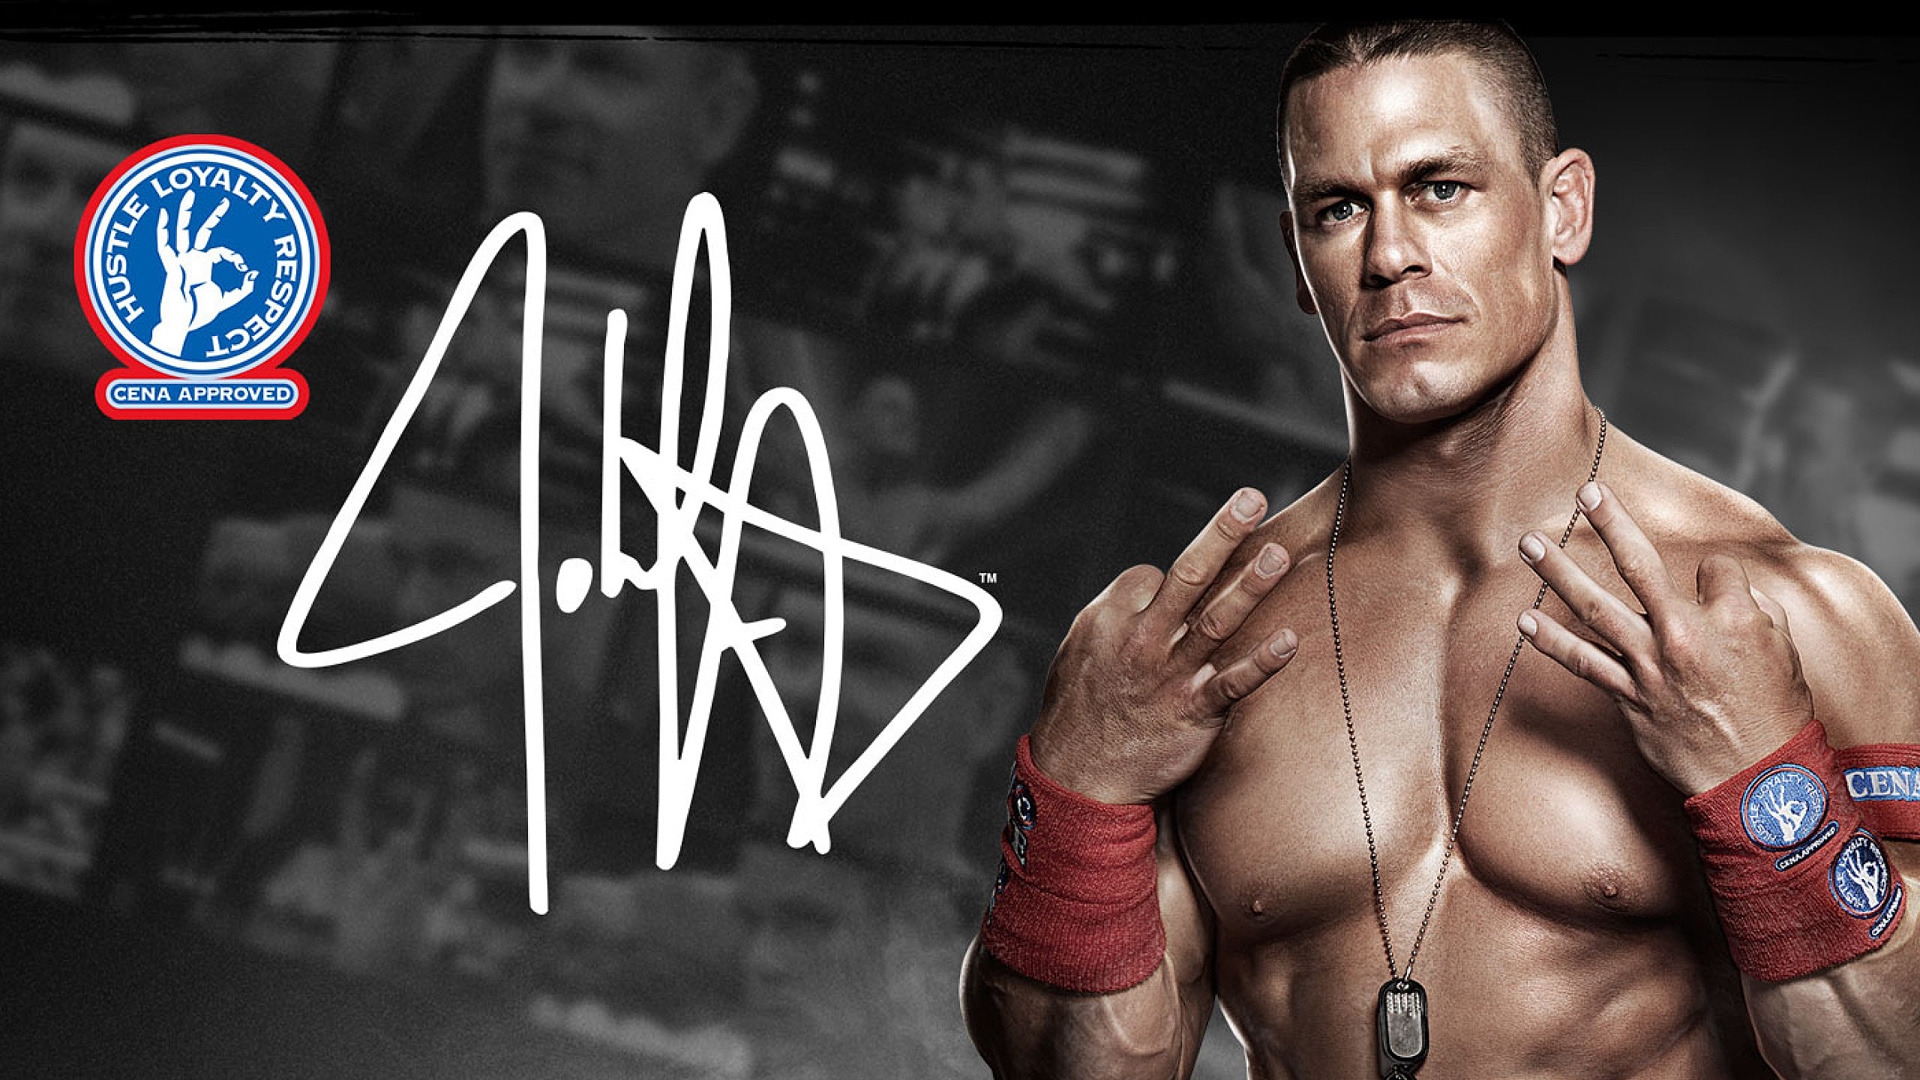 John Cena WWE for 1920 x 1080 HDTV 1080p resolution